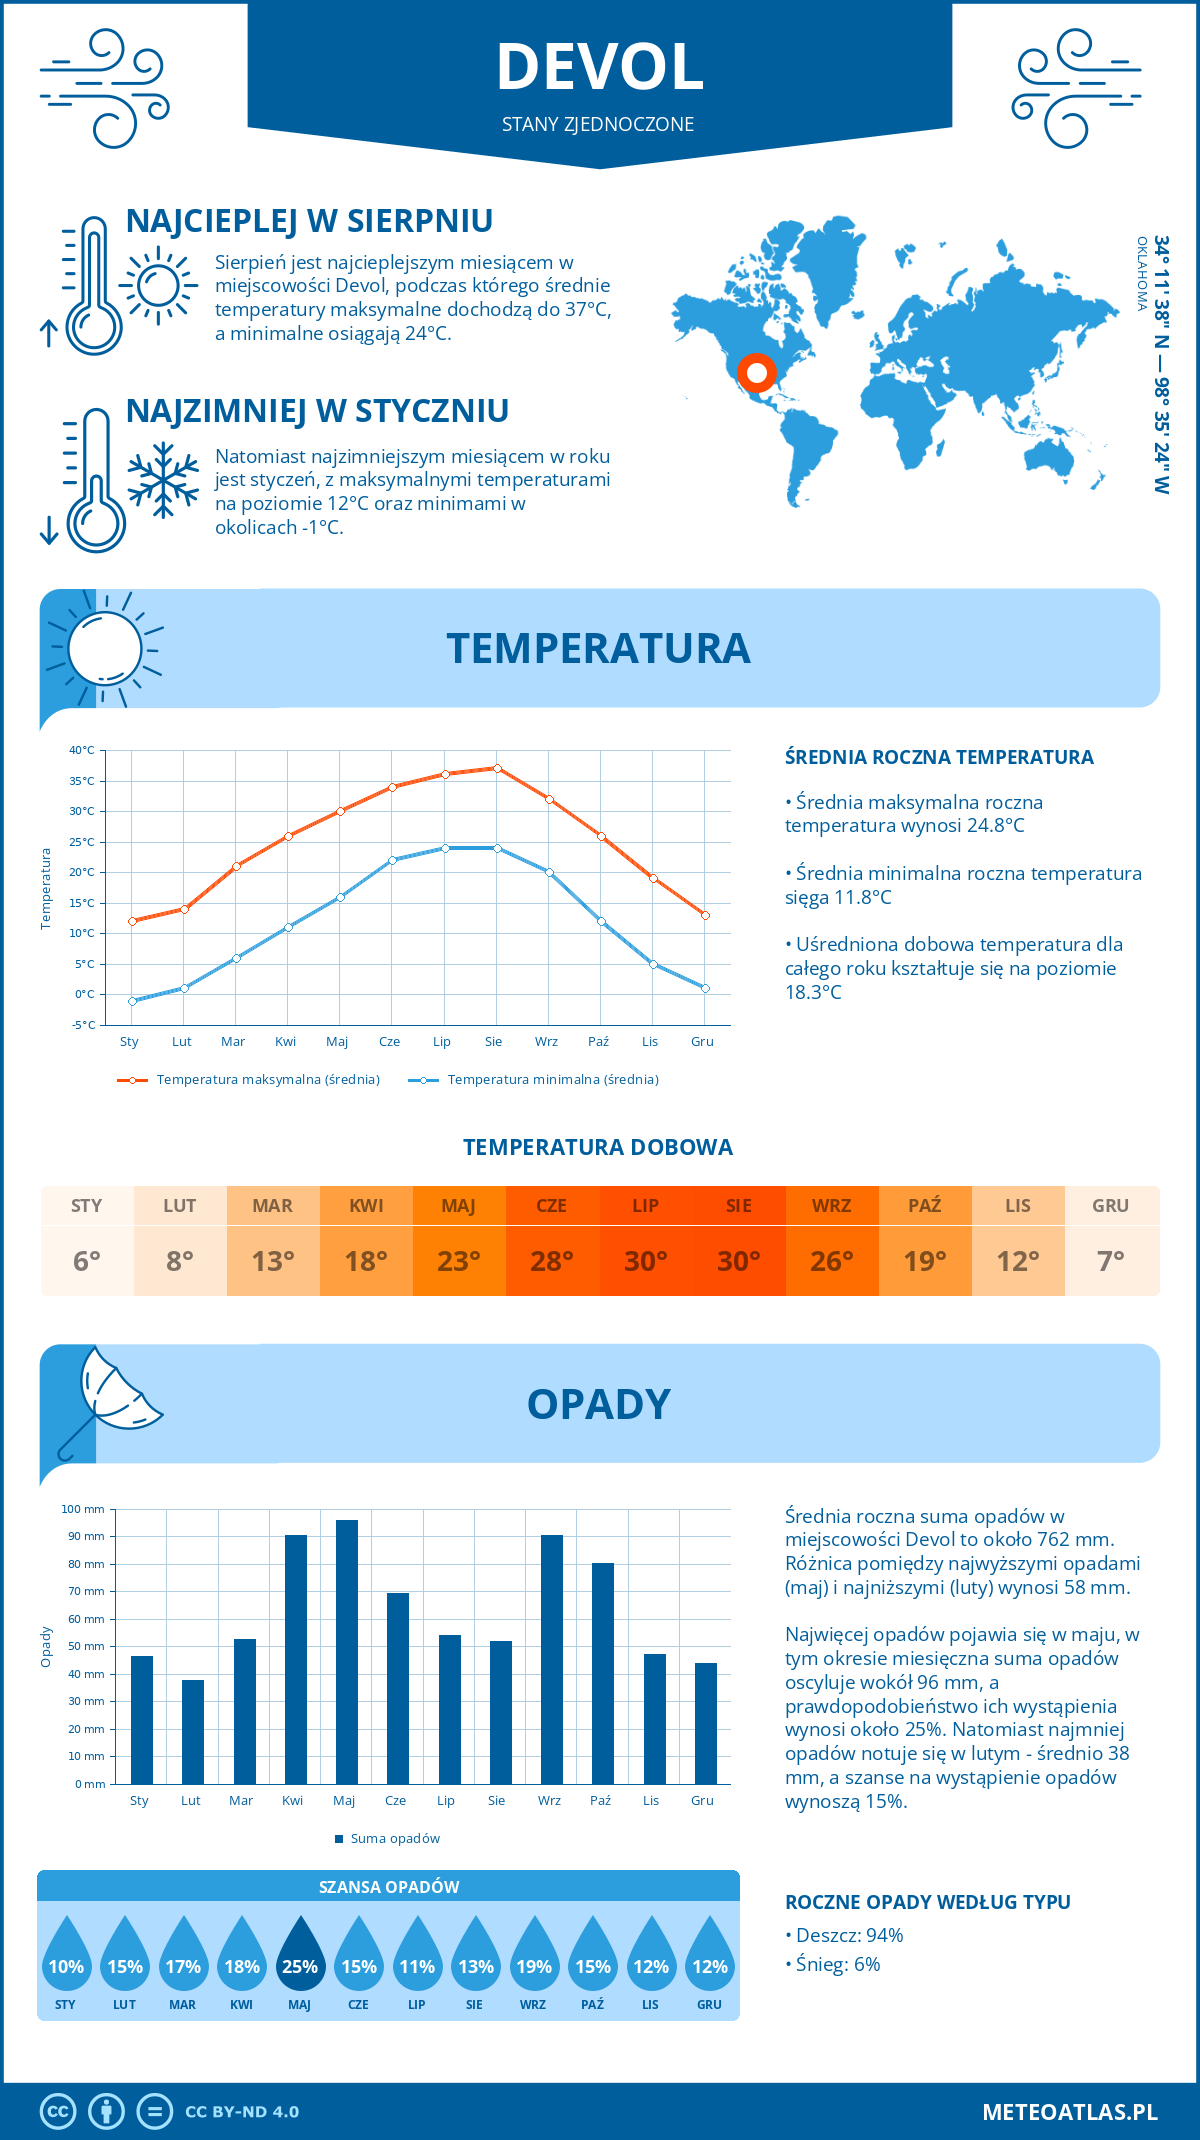 Pogoda Devol (Stany Zjednoczone). Temperatura oraz opady.